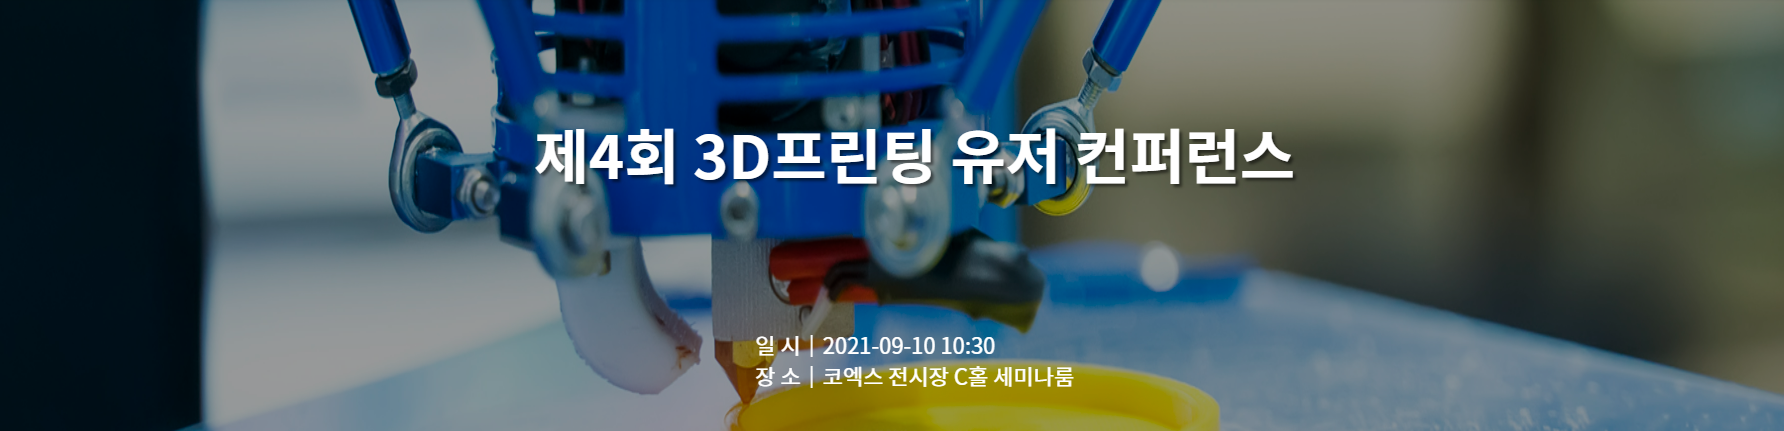 제4회 3D프린팅 유저 컨퍼런스